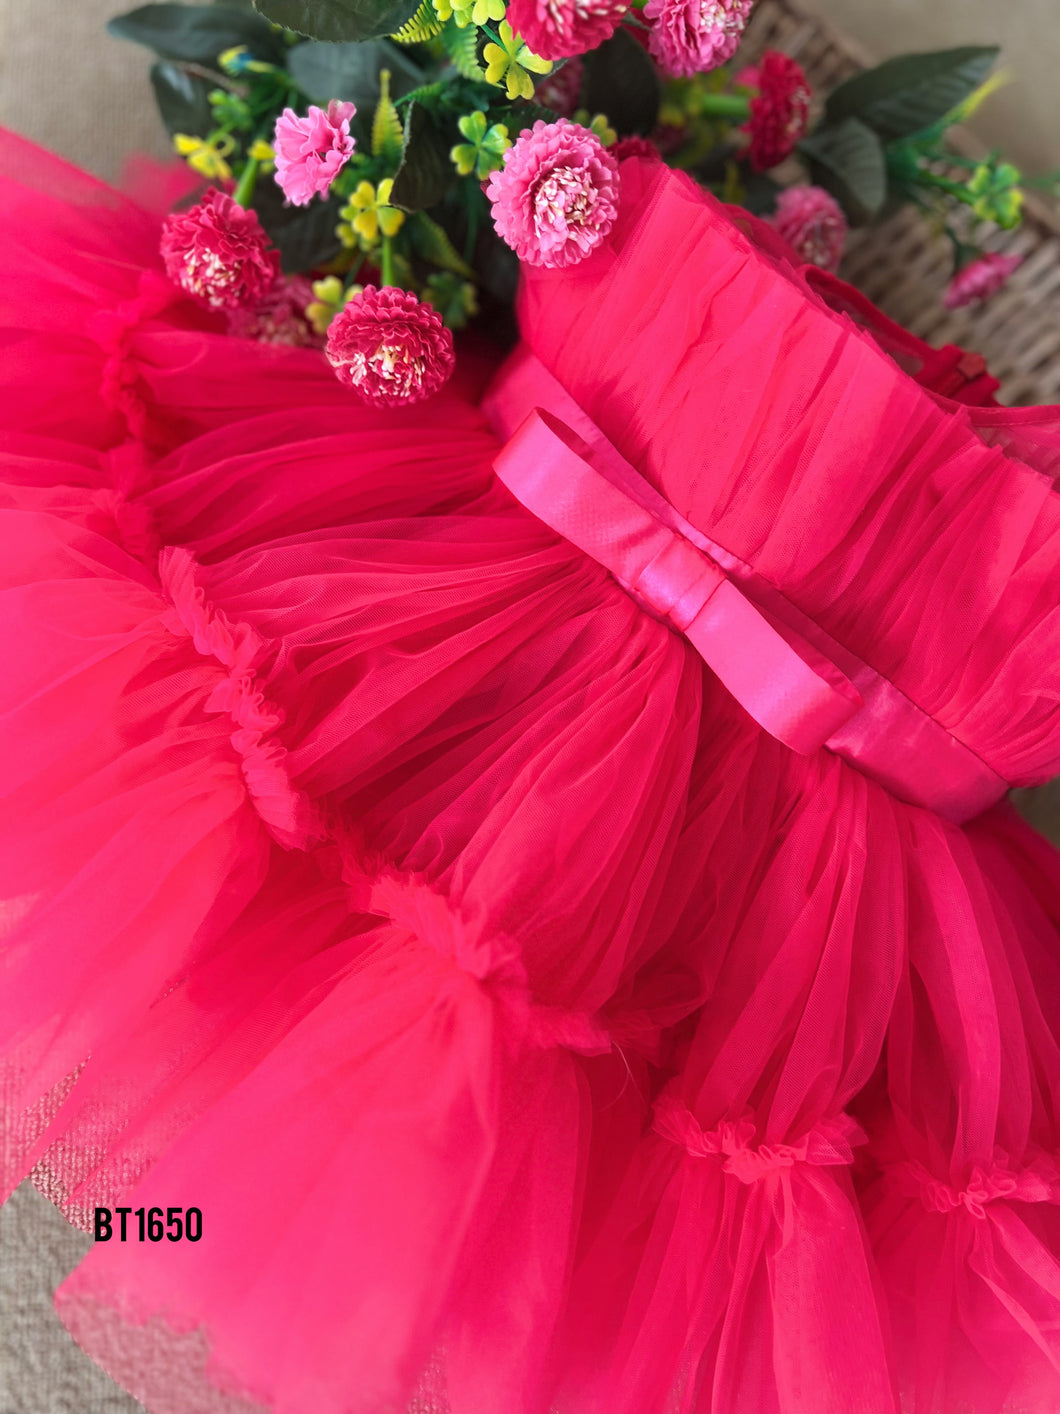 BT1650 Crimson Joy Dress – A Burst of Celebration